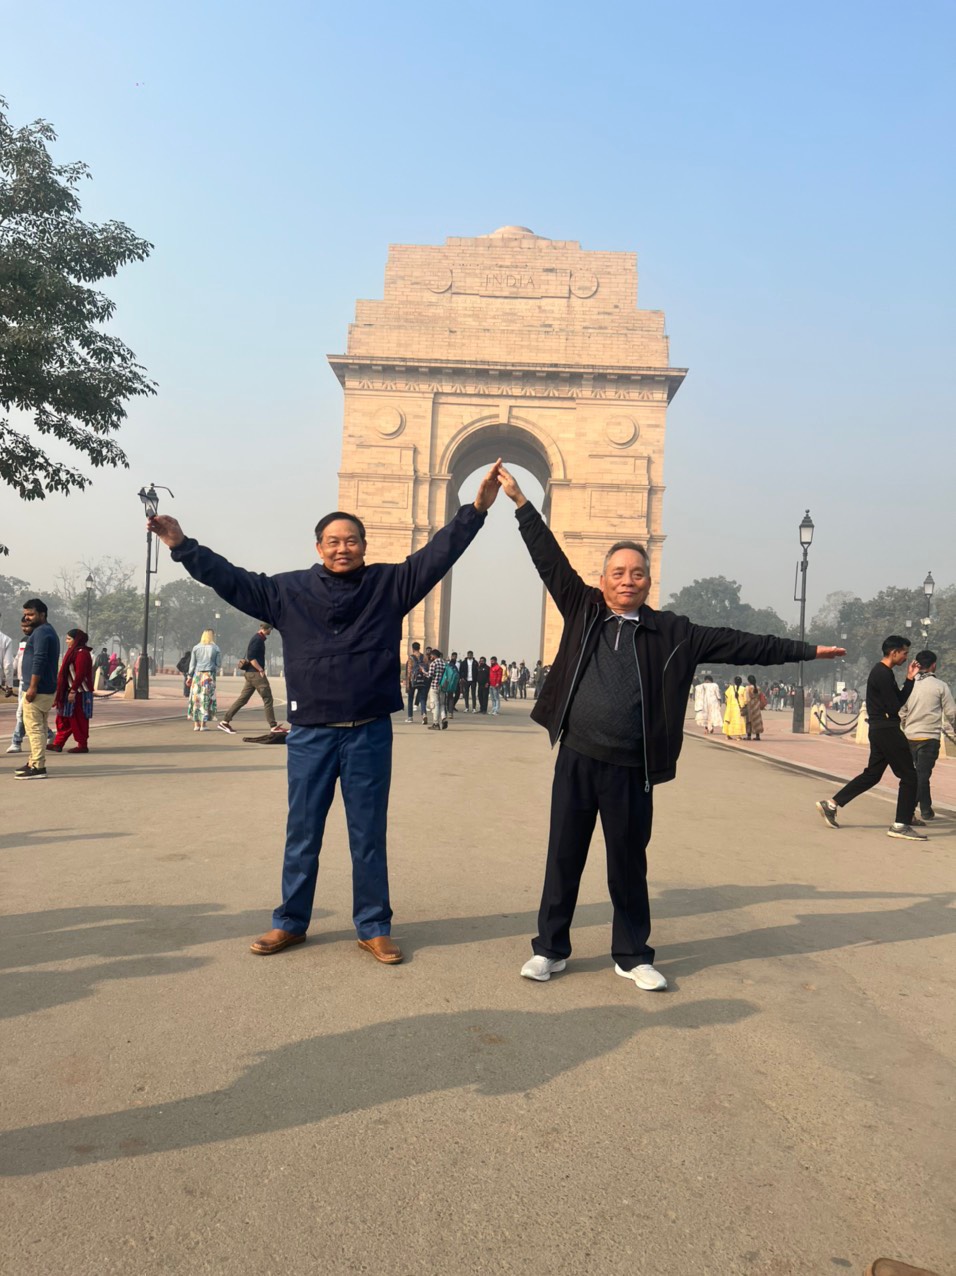 Tiến sĩ Trương Thành Công (trái) và tác giả trước Cổng Ấn Độ - India Gate.